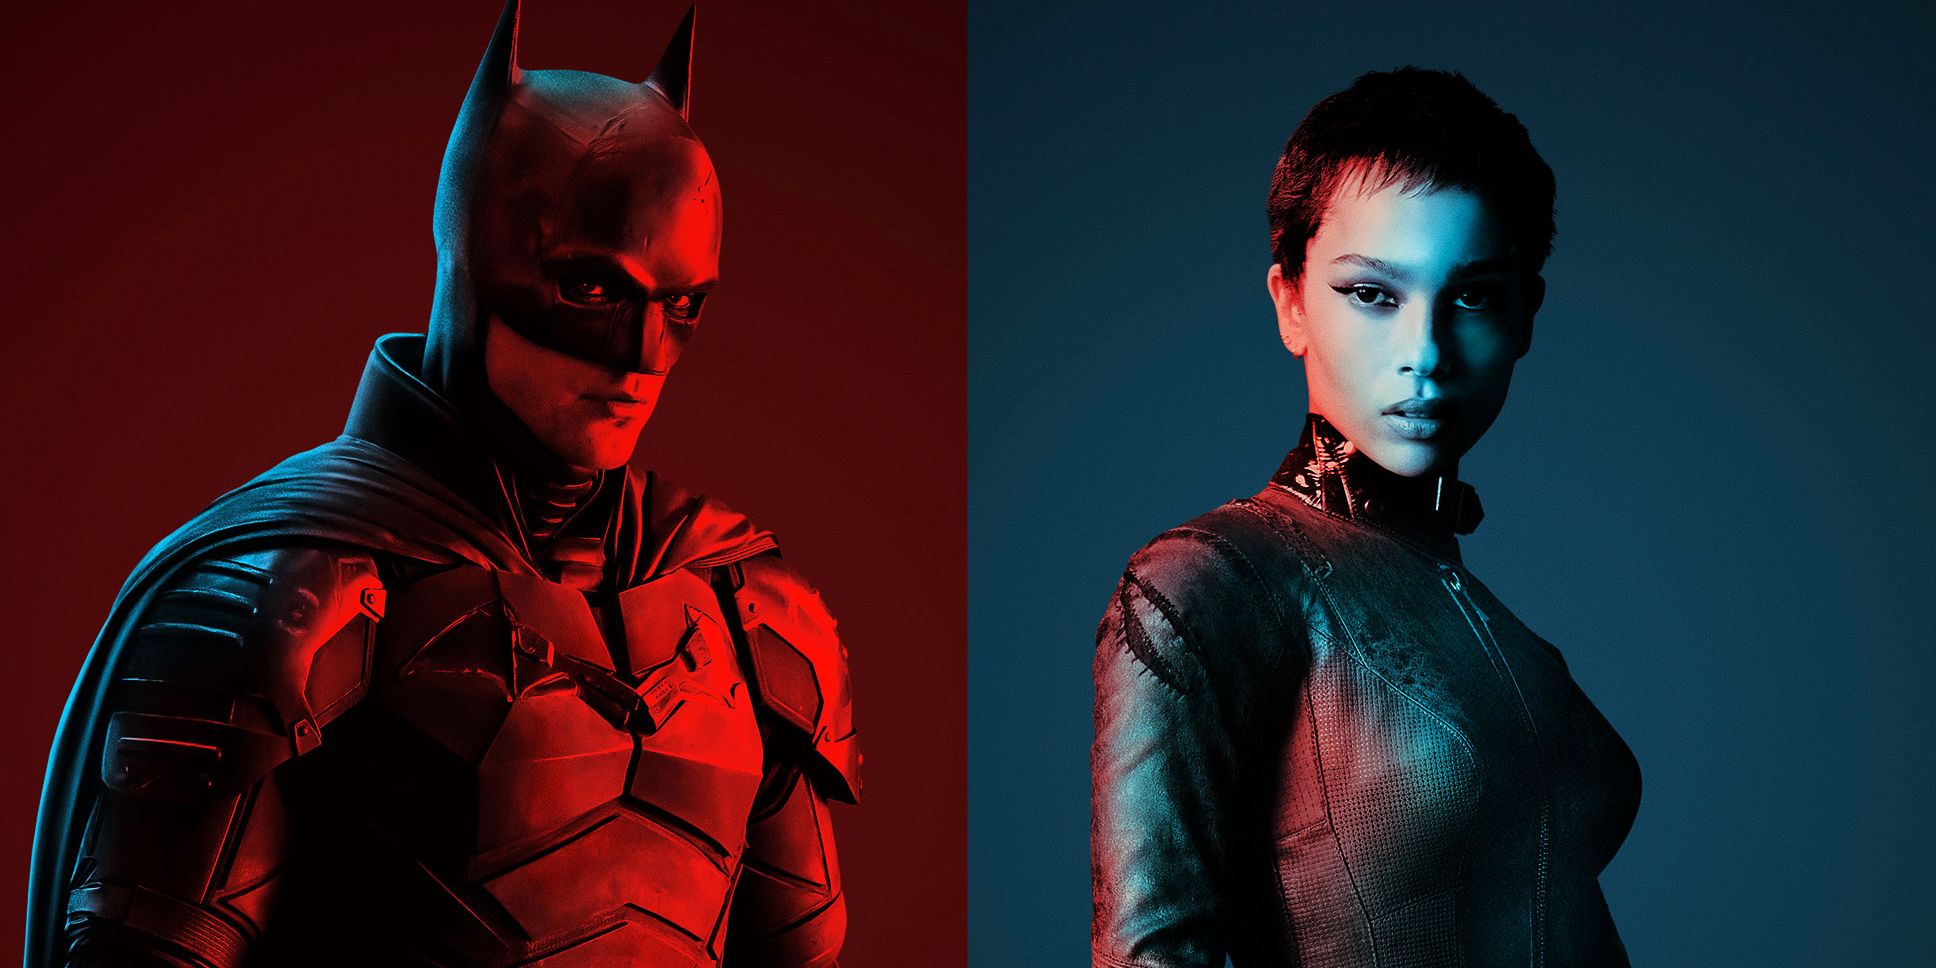 El póster de Batman muestra a Dark Knight y Catwoman una al lado de la otra